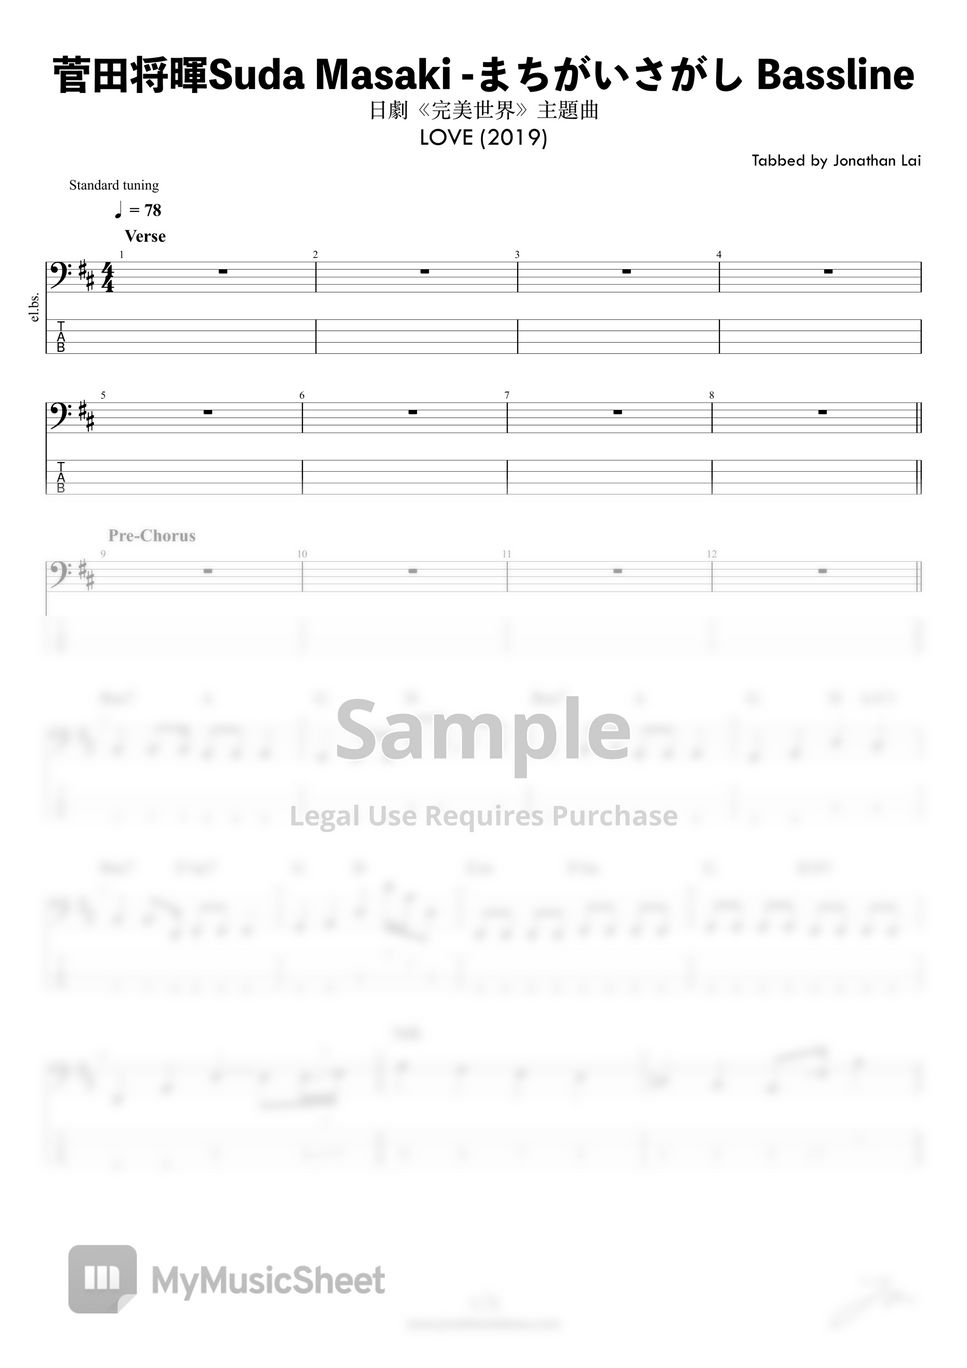 菅田将暉Suda Masaki - まちがいさがし (Bass Guitar Score 低音結他譜 - 日劇《完美世界》主題曲) by Jonathan Lai